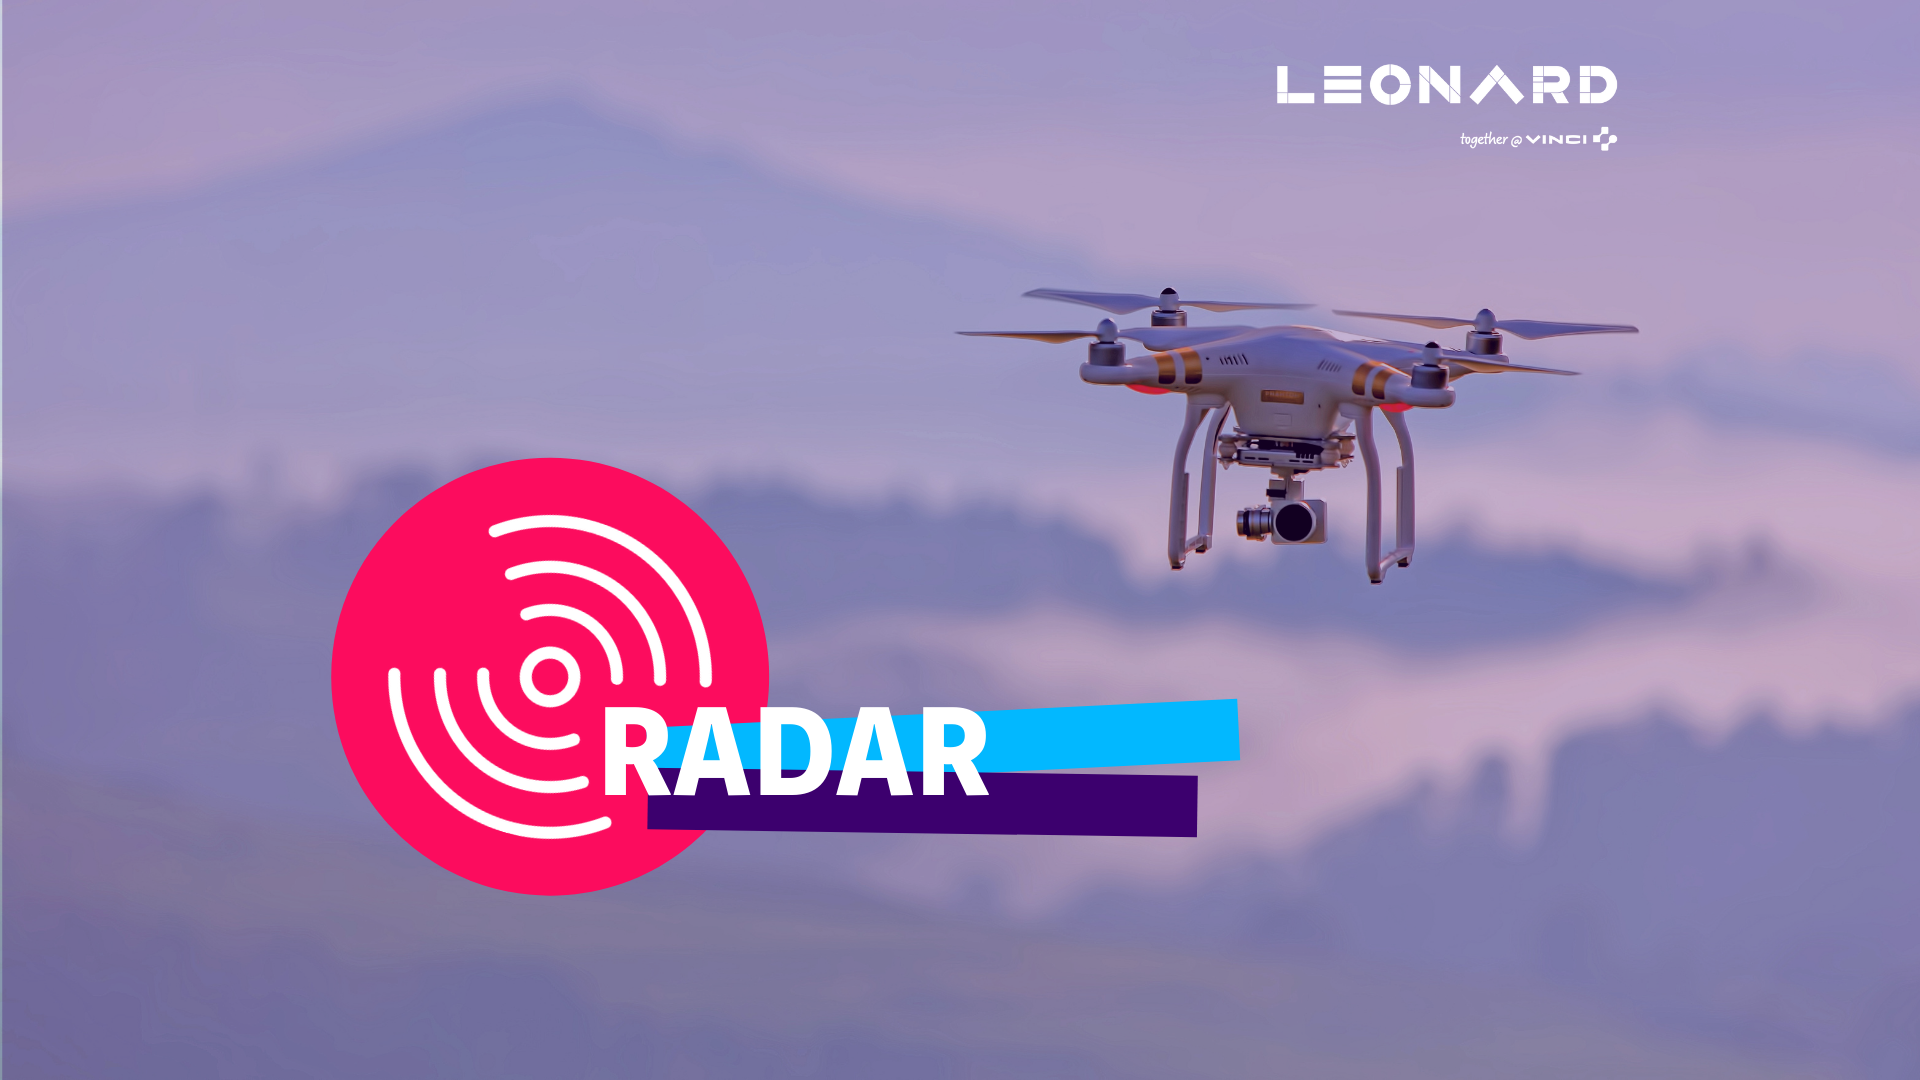 Radar – Notre sélection de business innovants #52